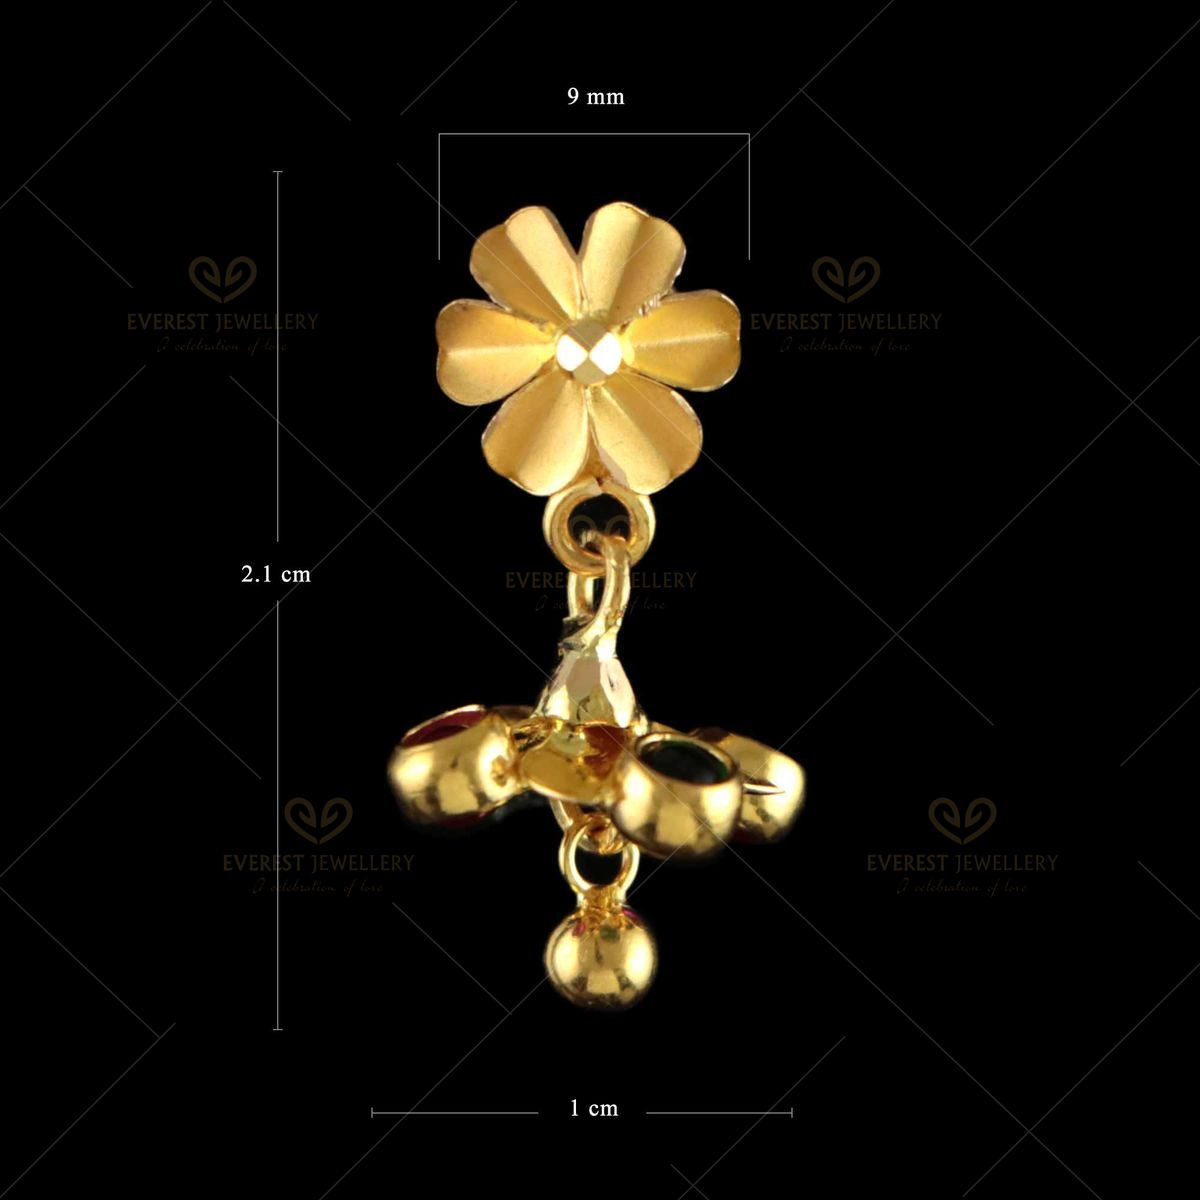 22K Gold Plaed Earring Women Daily Wear Drop Dangle Traditional Ethnic  Jewellery | eBay